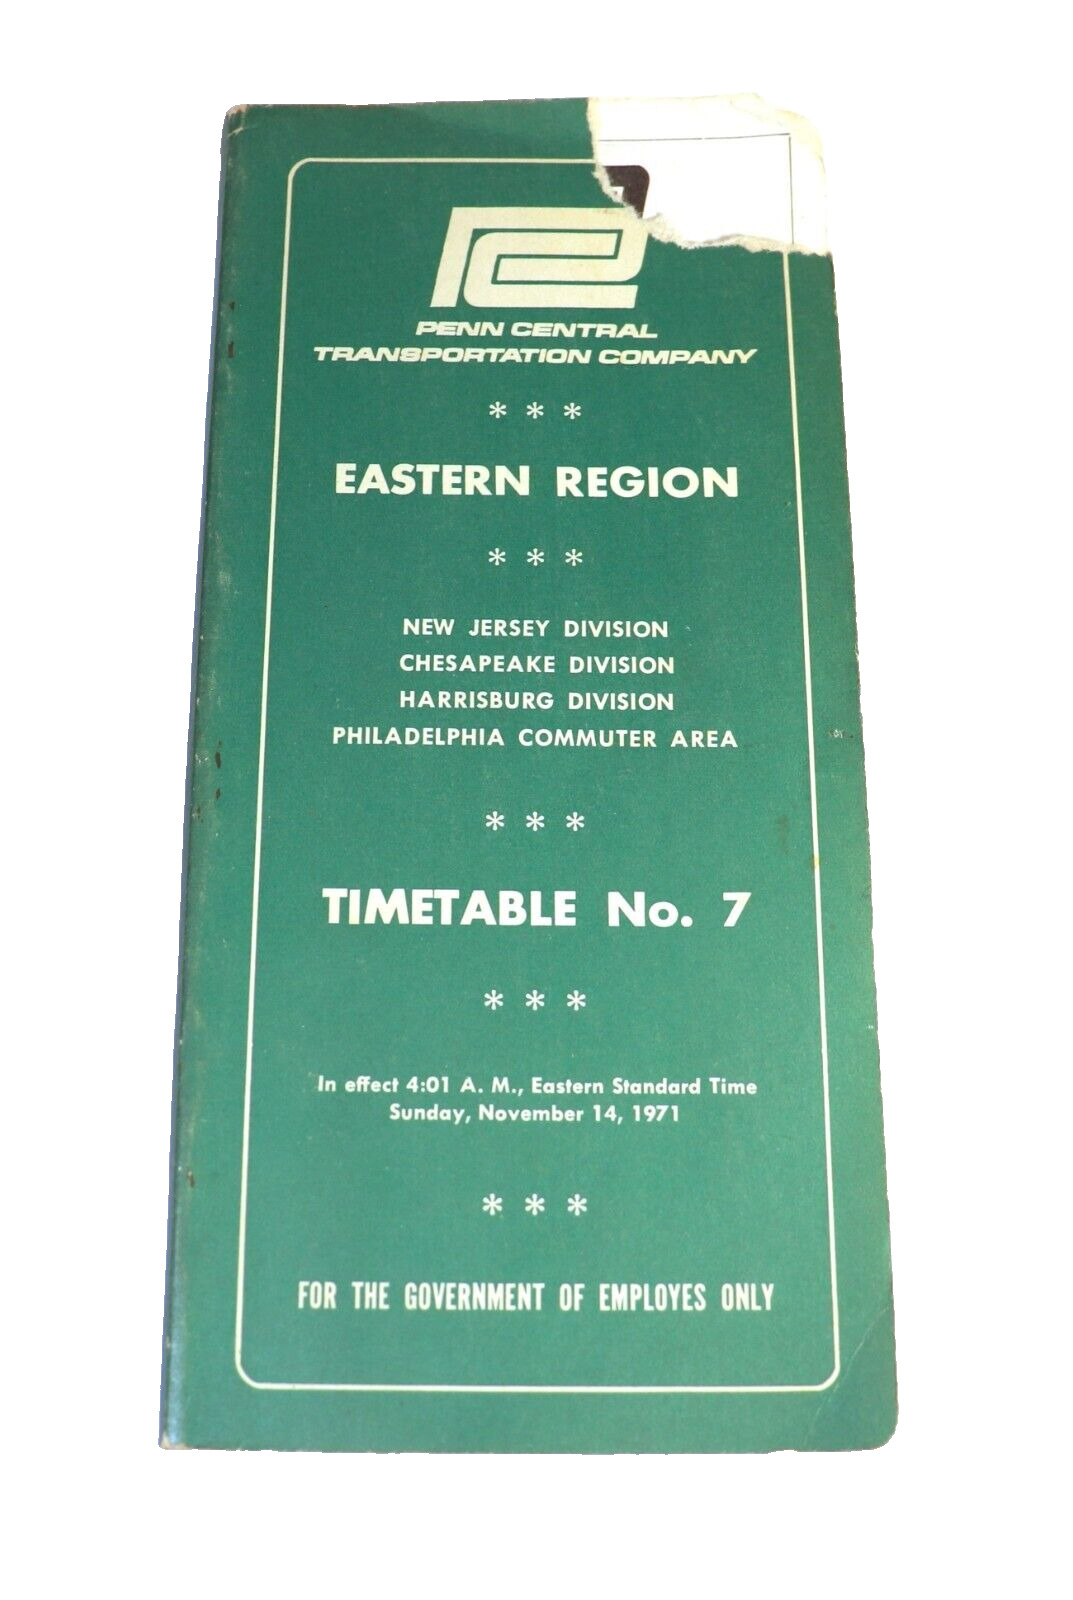 Vintage 1971 Penn Central Transportation Co Eastern Region Timetable # 7 Book